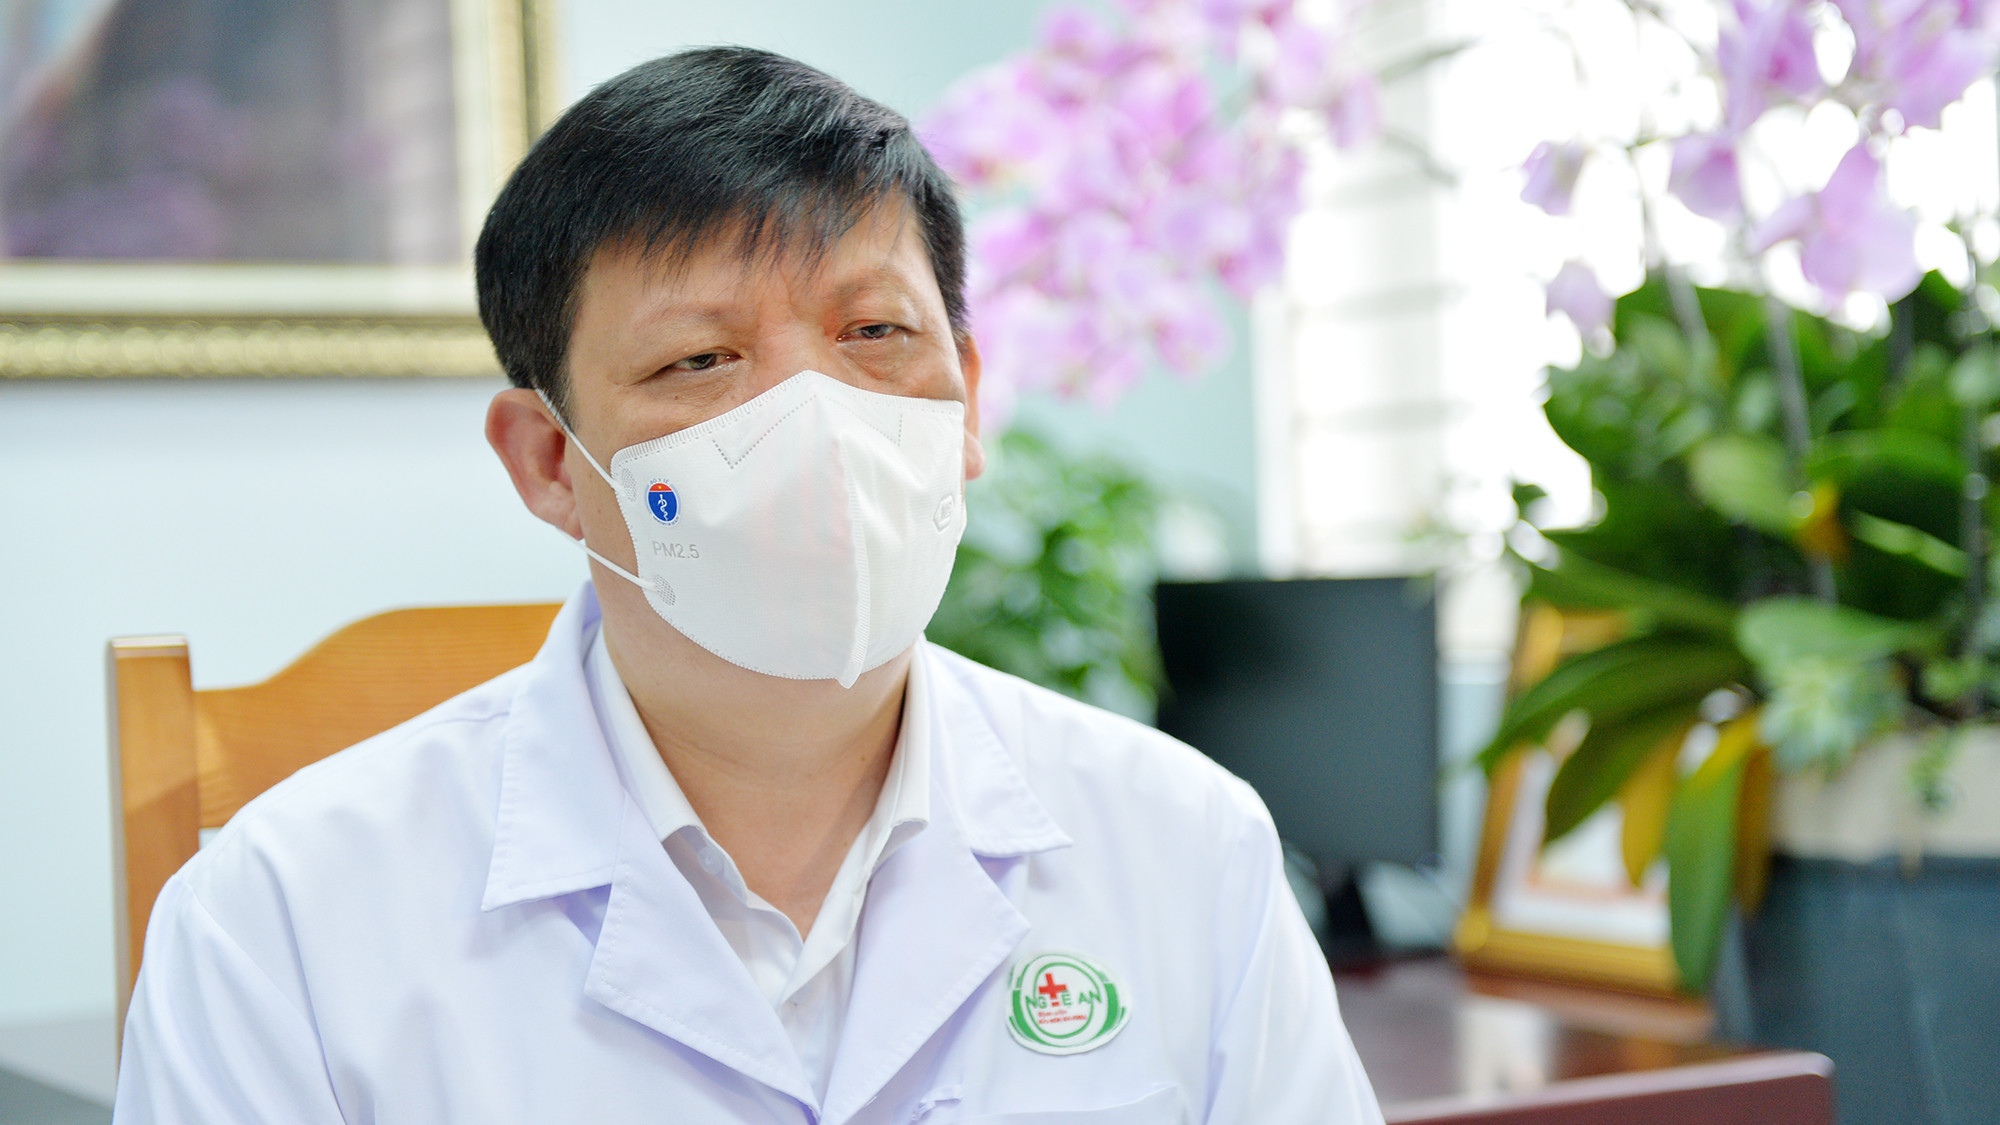 Bộ trưởng Bộ Y tế Nguyễn Thanh Long chia sẻ về những mối lo về dịch bệnh COVID-19 thời điểm hiện nay. Ảnh: Thành Cường